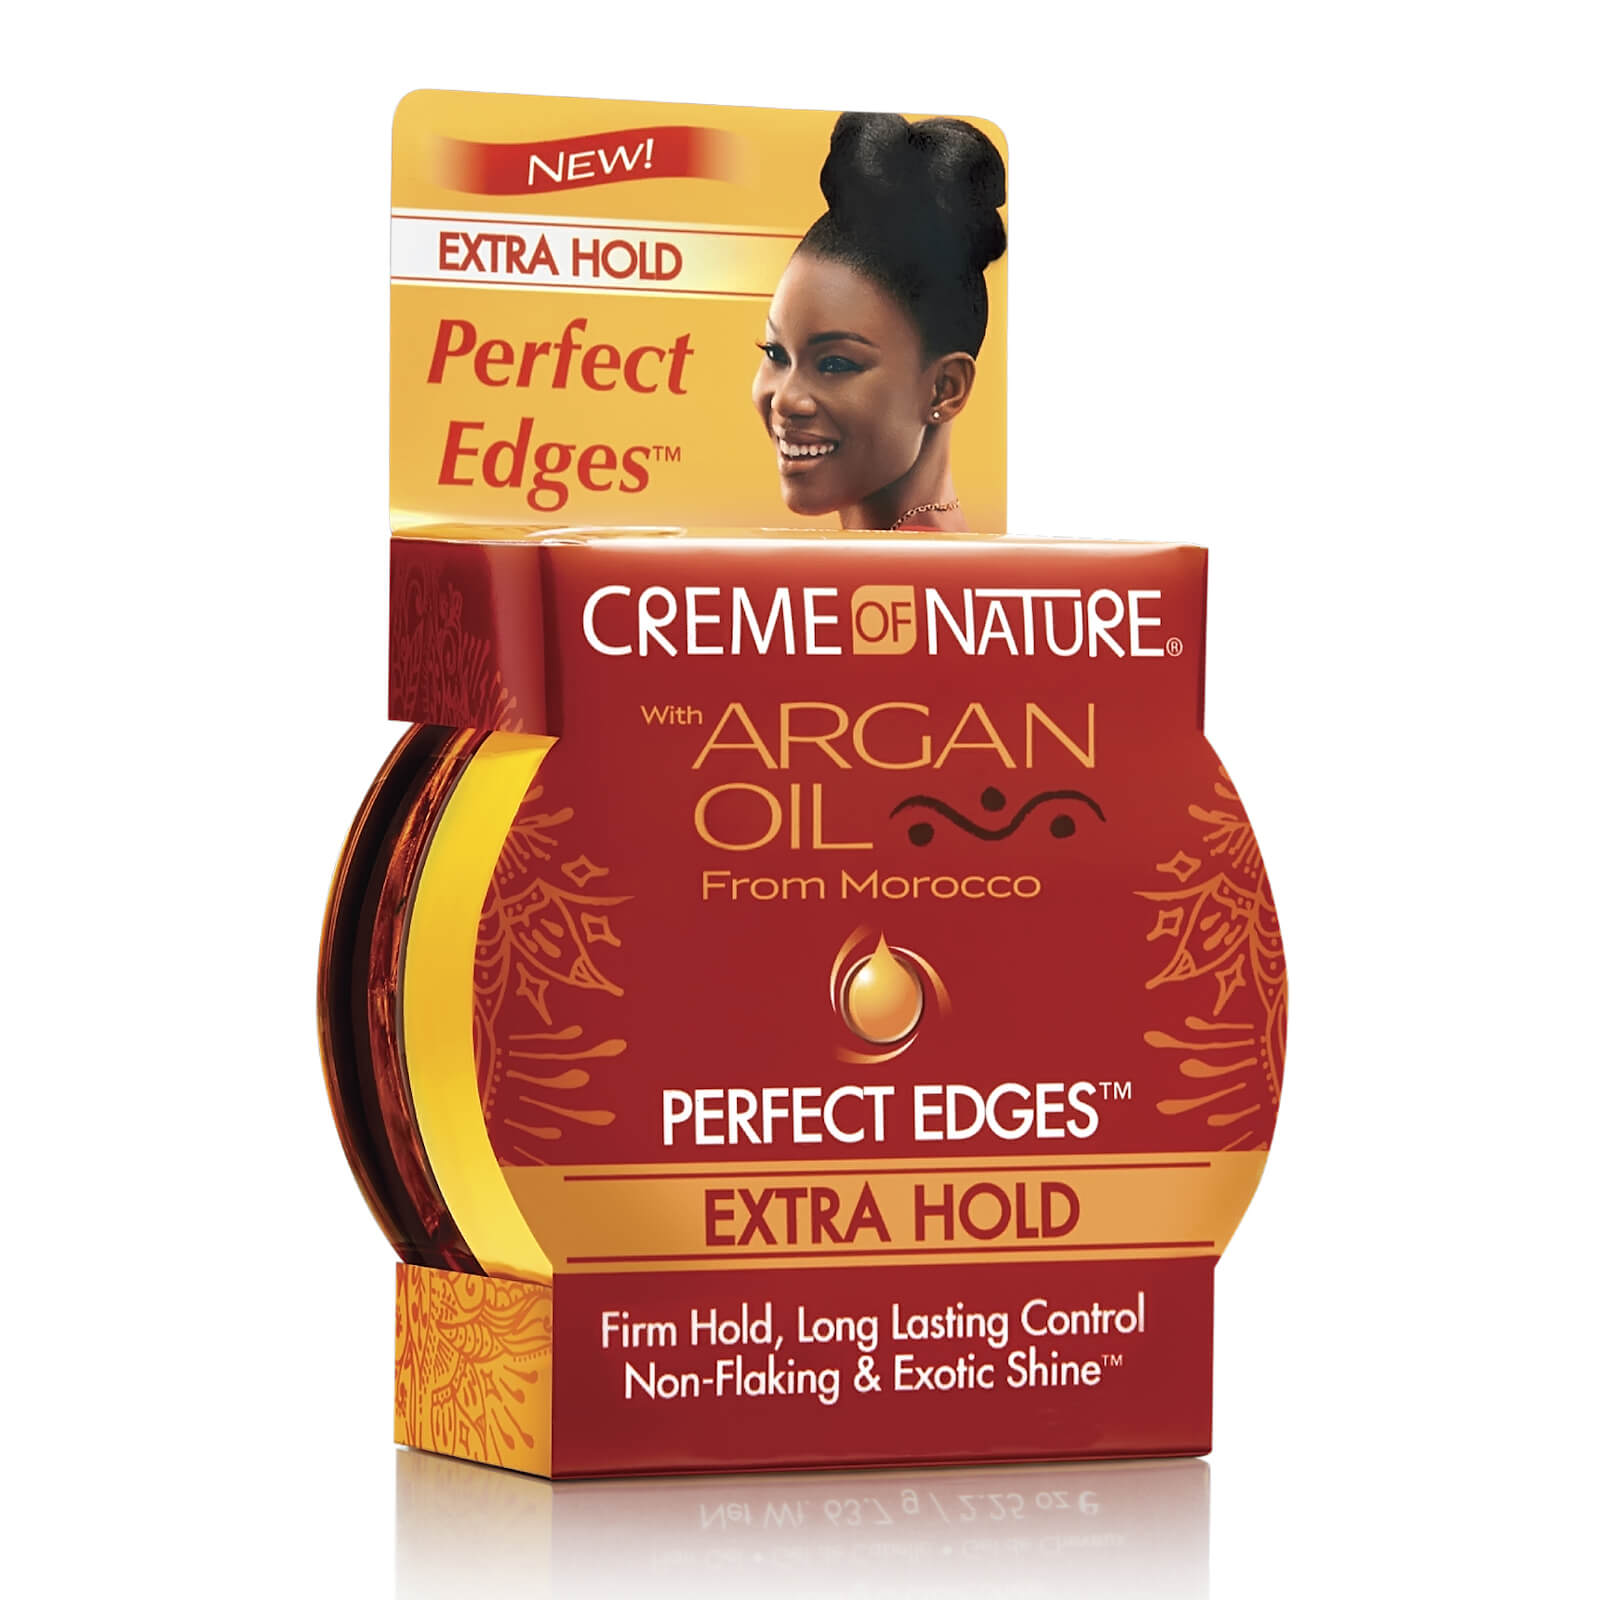 Crème of Nature Argan Oil Perfect Edges Extra Hold 64g lookfantastic.com imagine